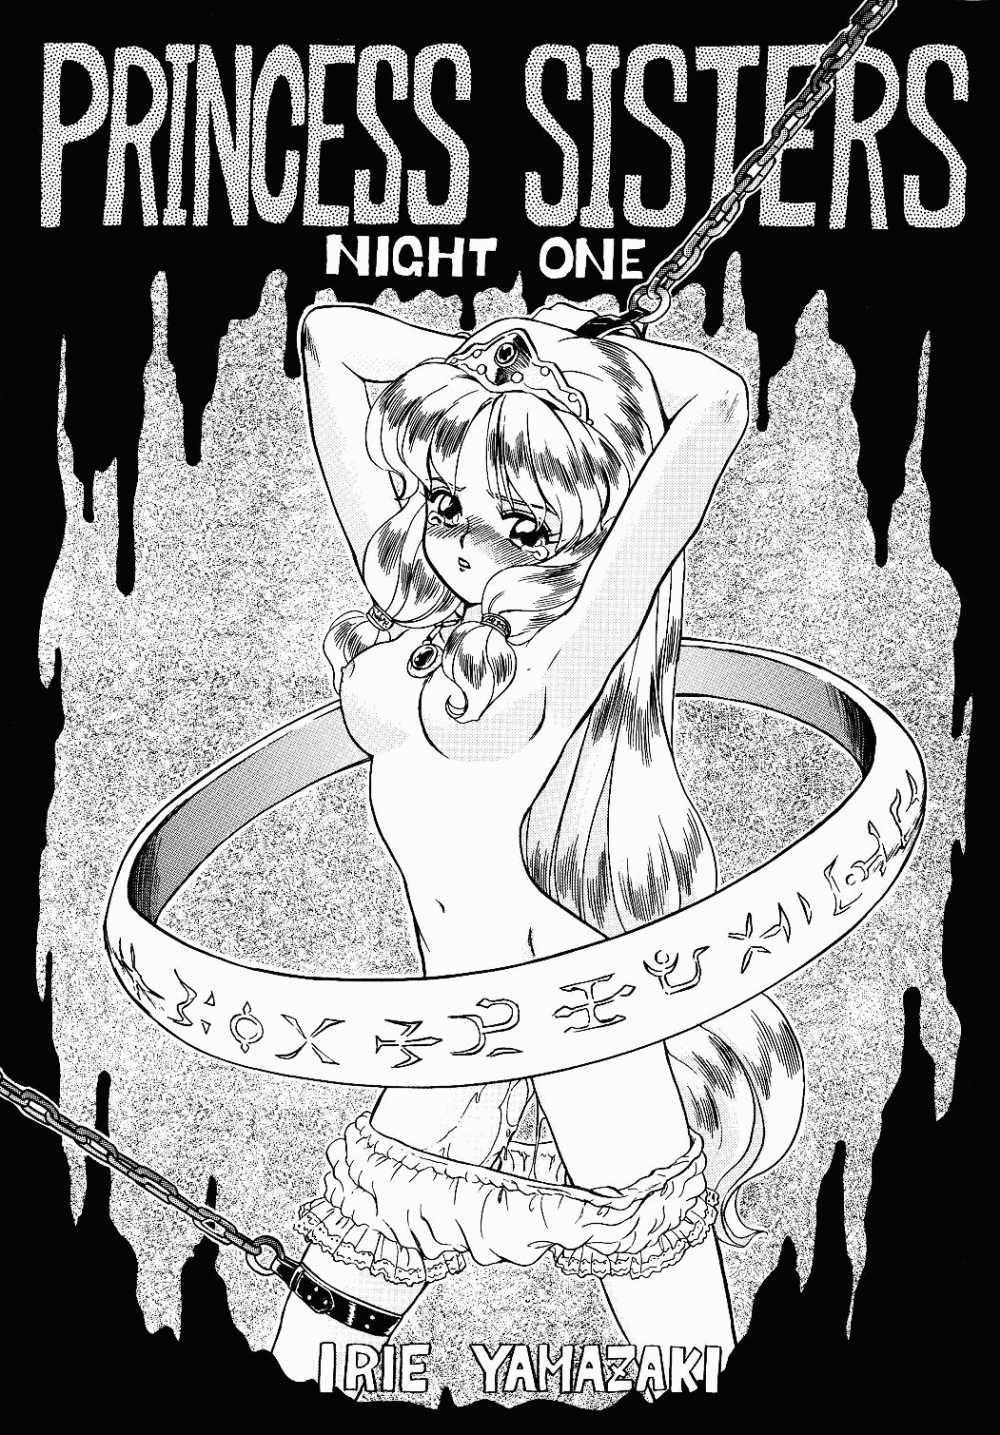 [Rat Tail (Irie Yamazaki)] PRINCESS SISTERS NIGHT ONE page 1 full